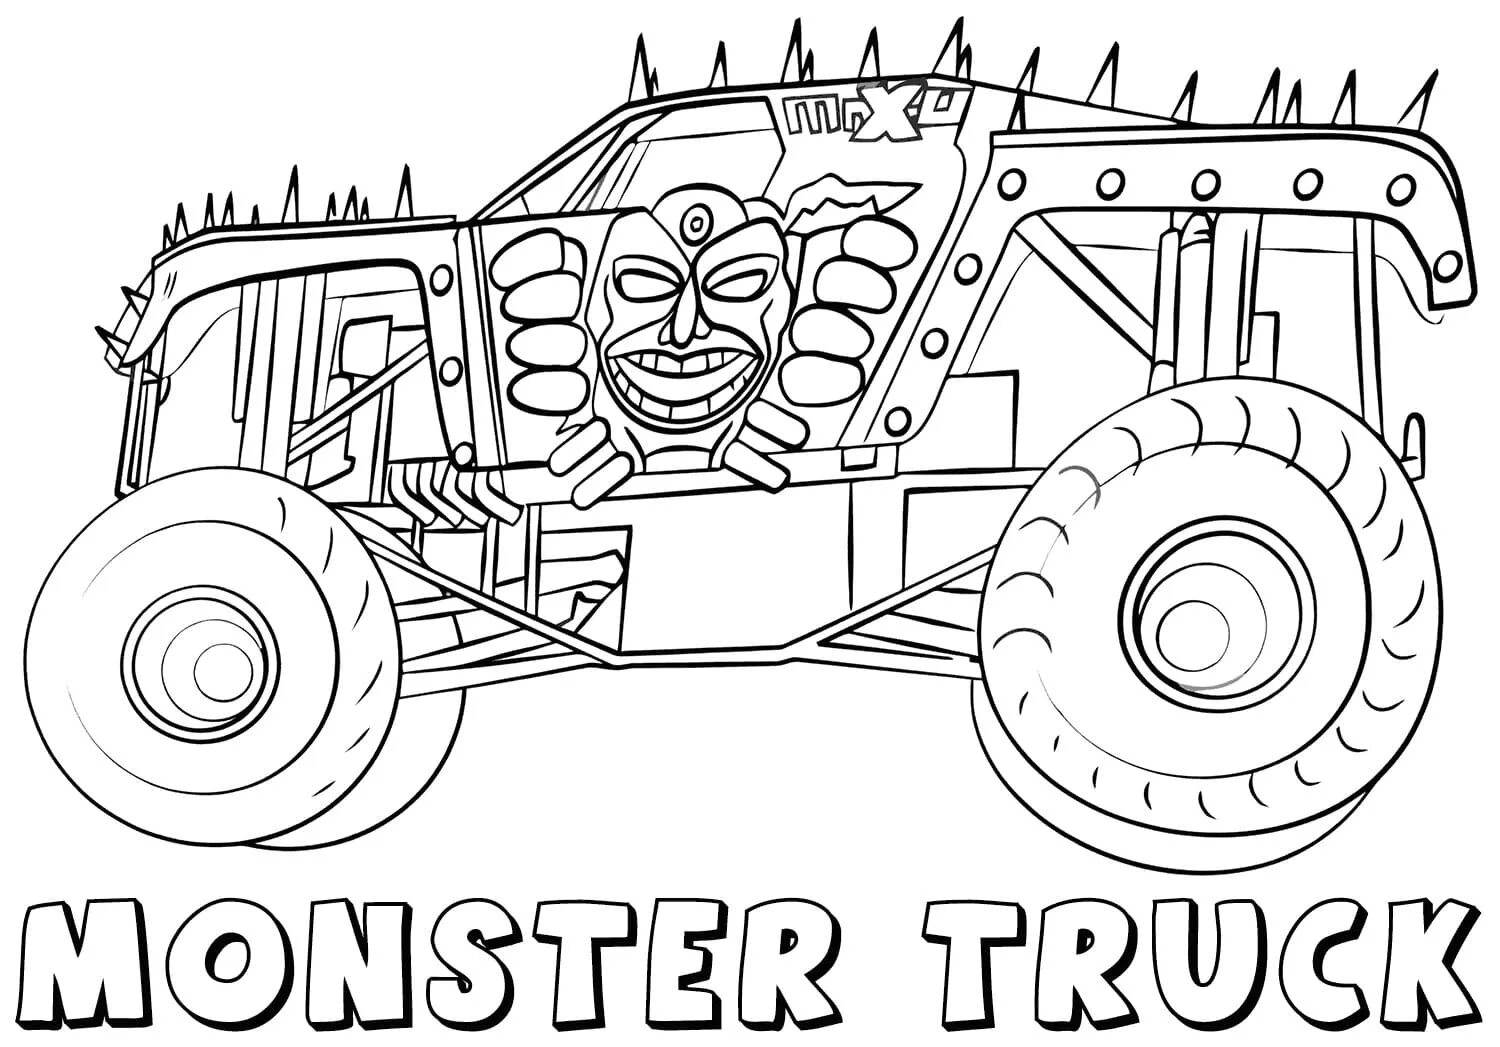 Fire monster truck #8